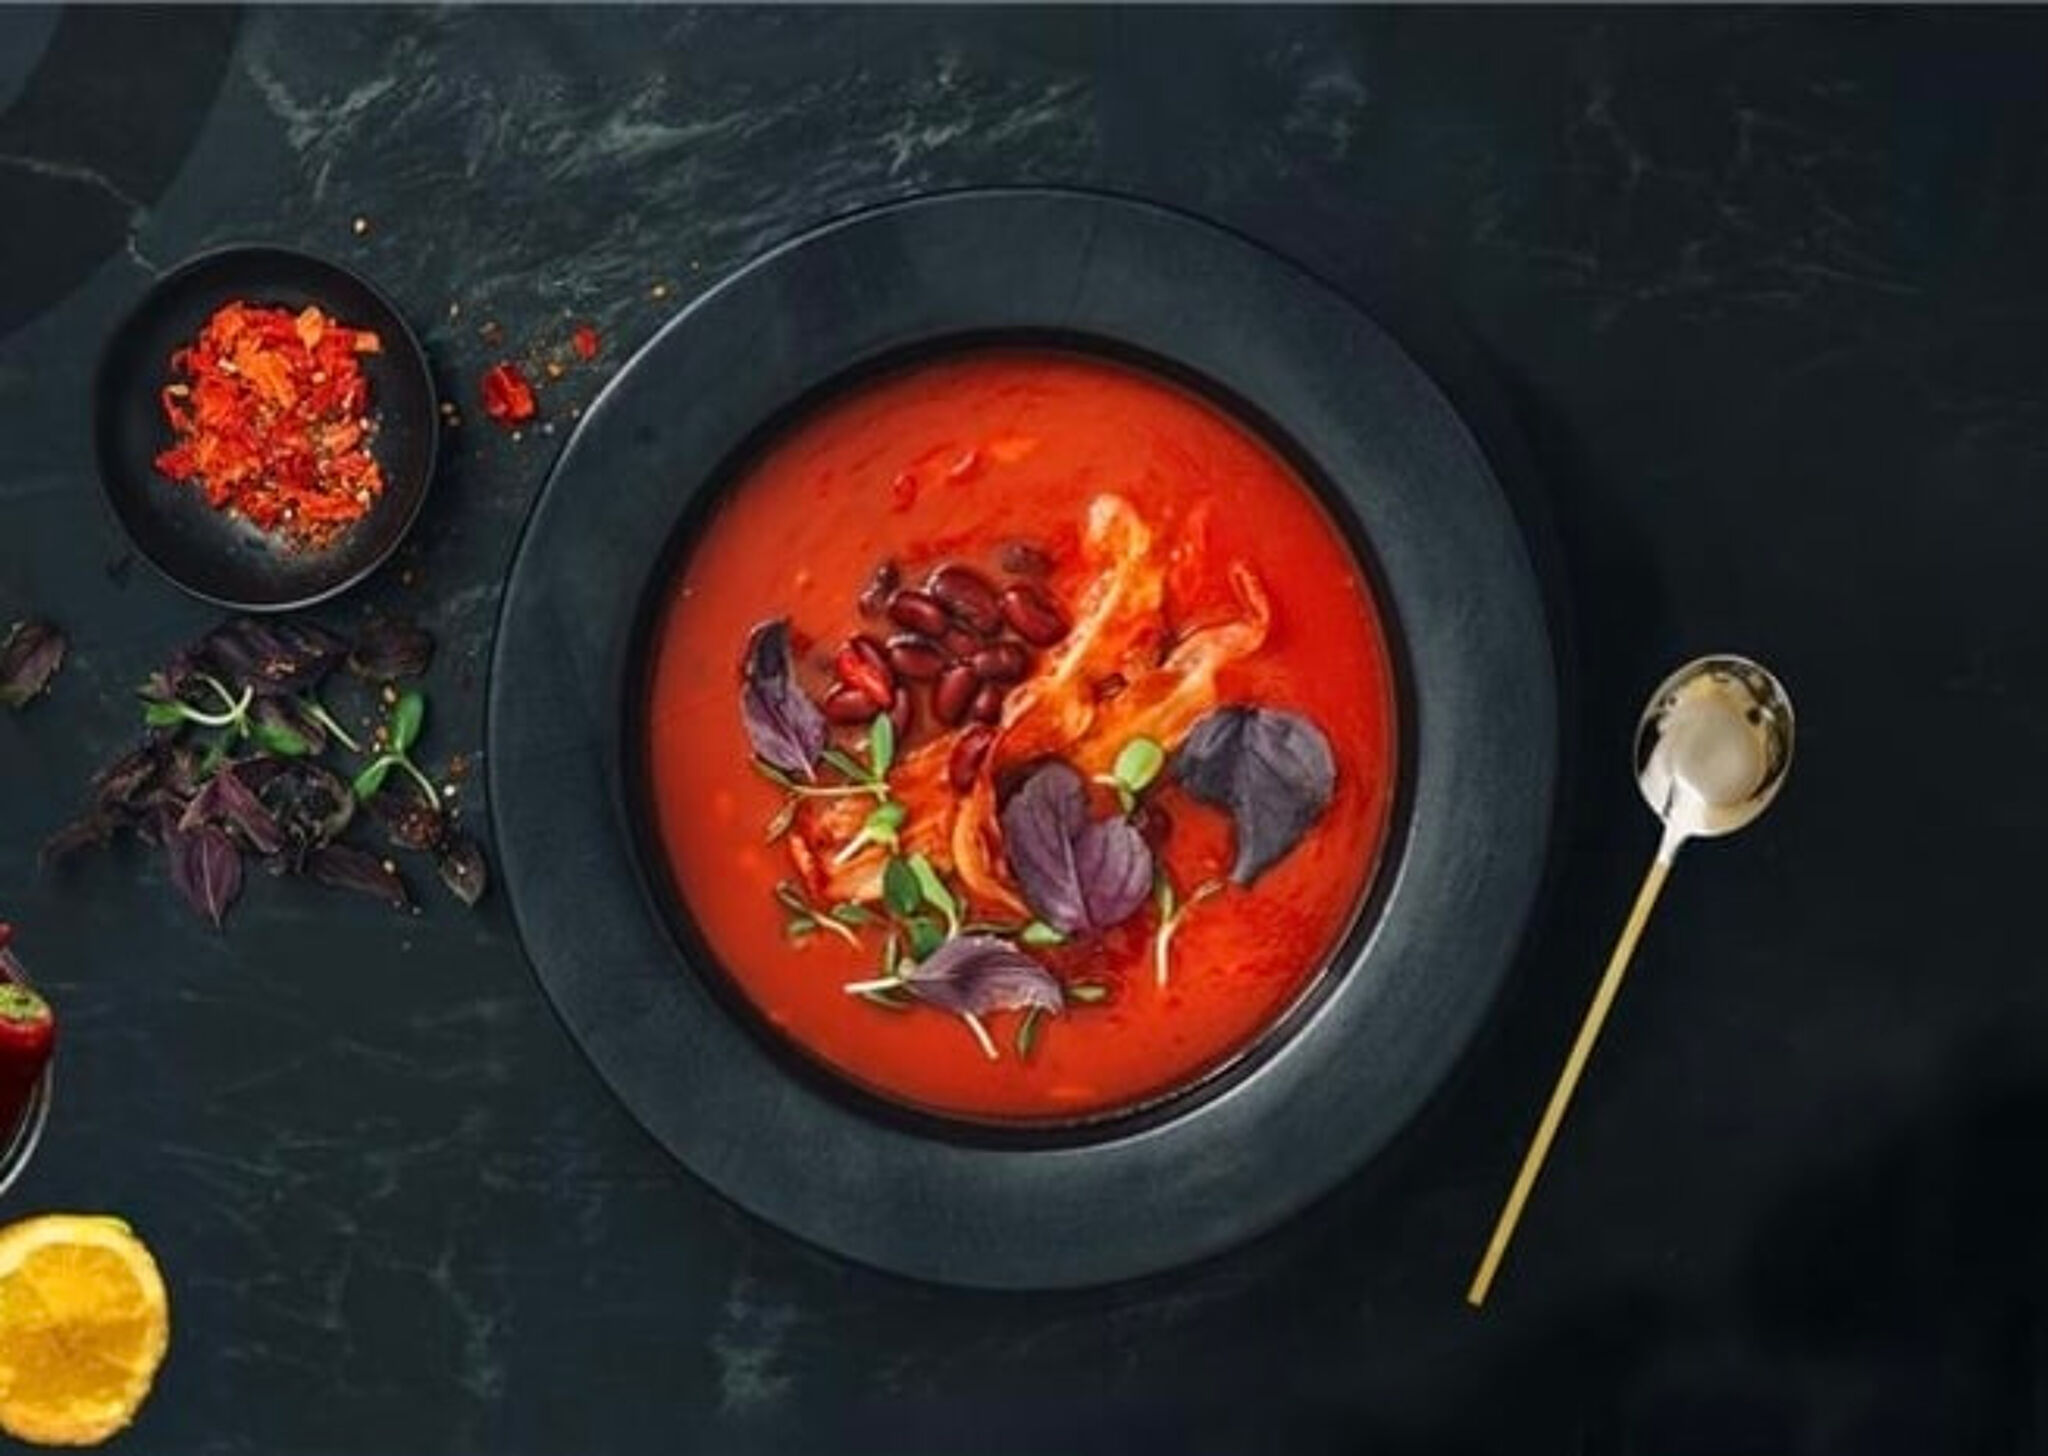 Soupe de tomate riche garnie d'herbes et de haricots, servie dans un bol noir sur une surface sombre.